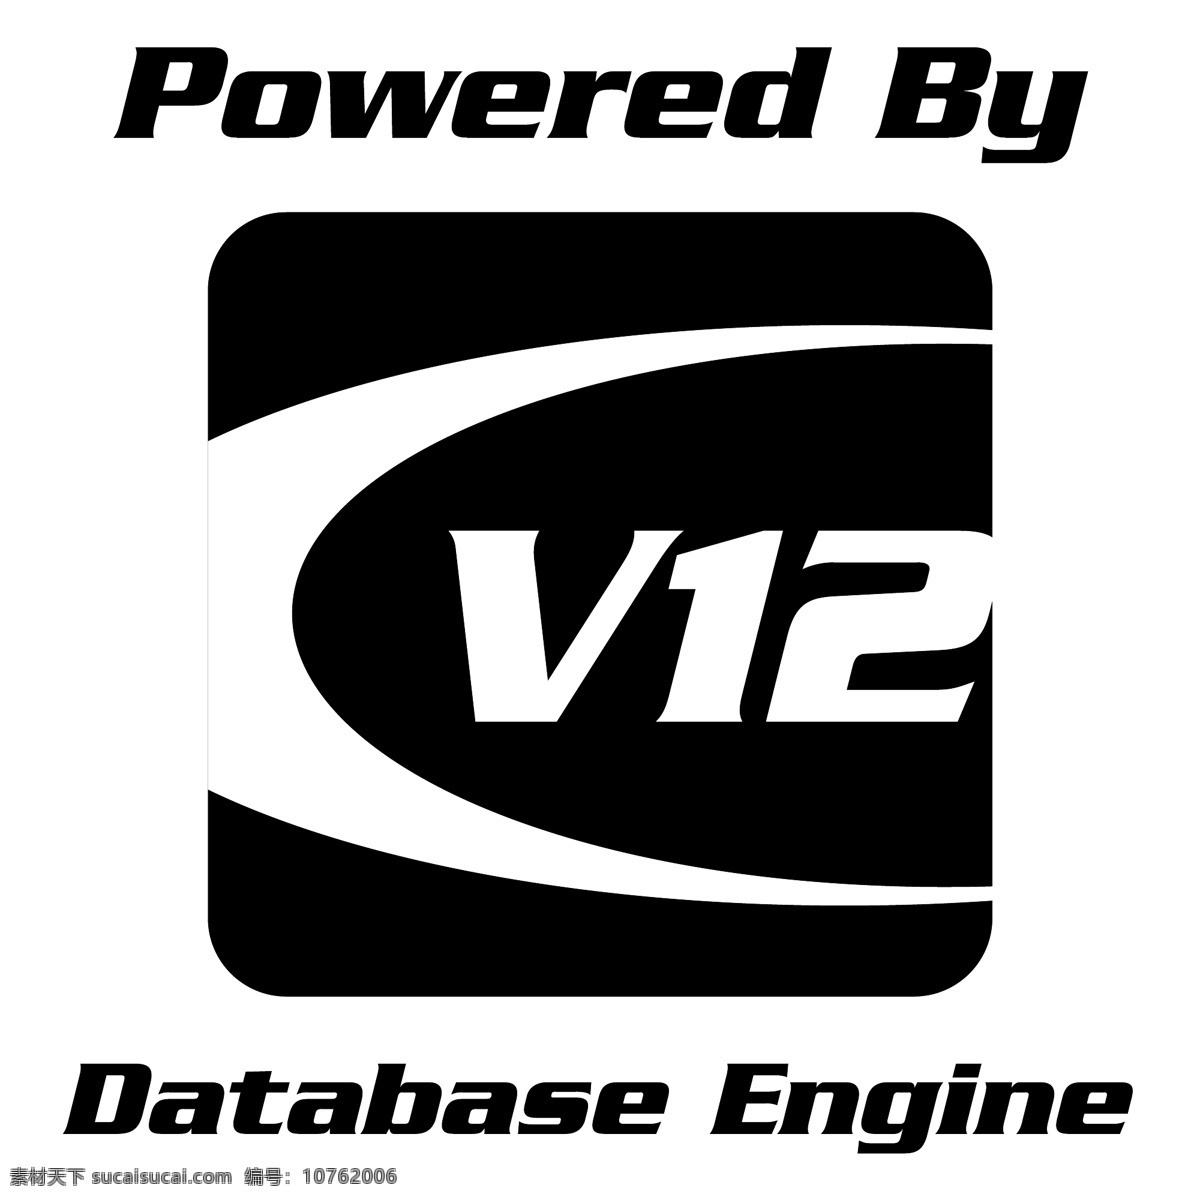 v12 数据库 引擎 发动机 矢量图形 的v12 v12数据库 数据库引擎 矢量 免费 矢量图 图像 建筑家居